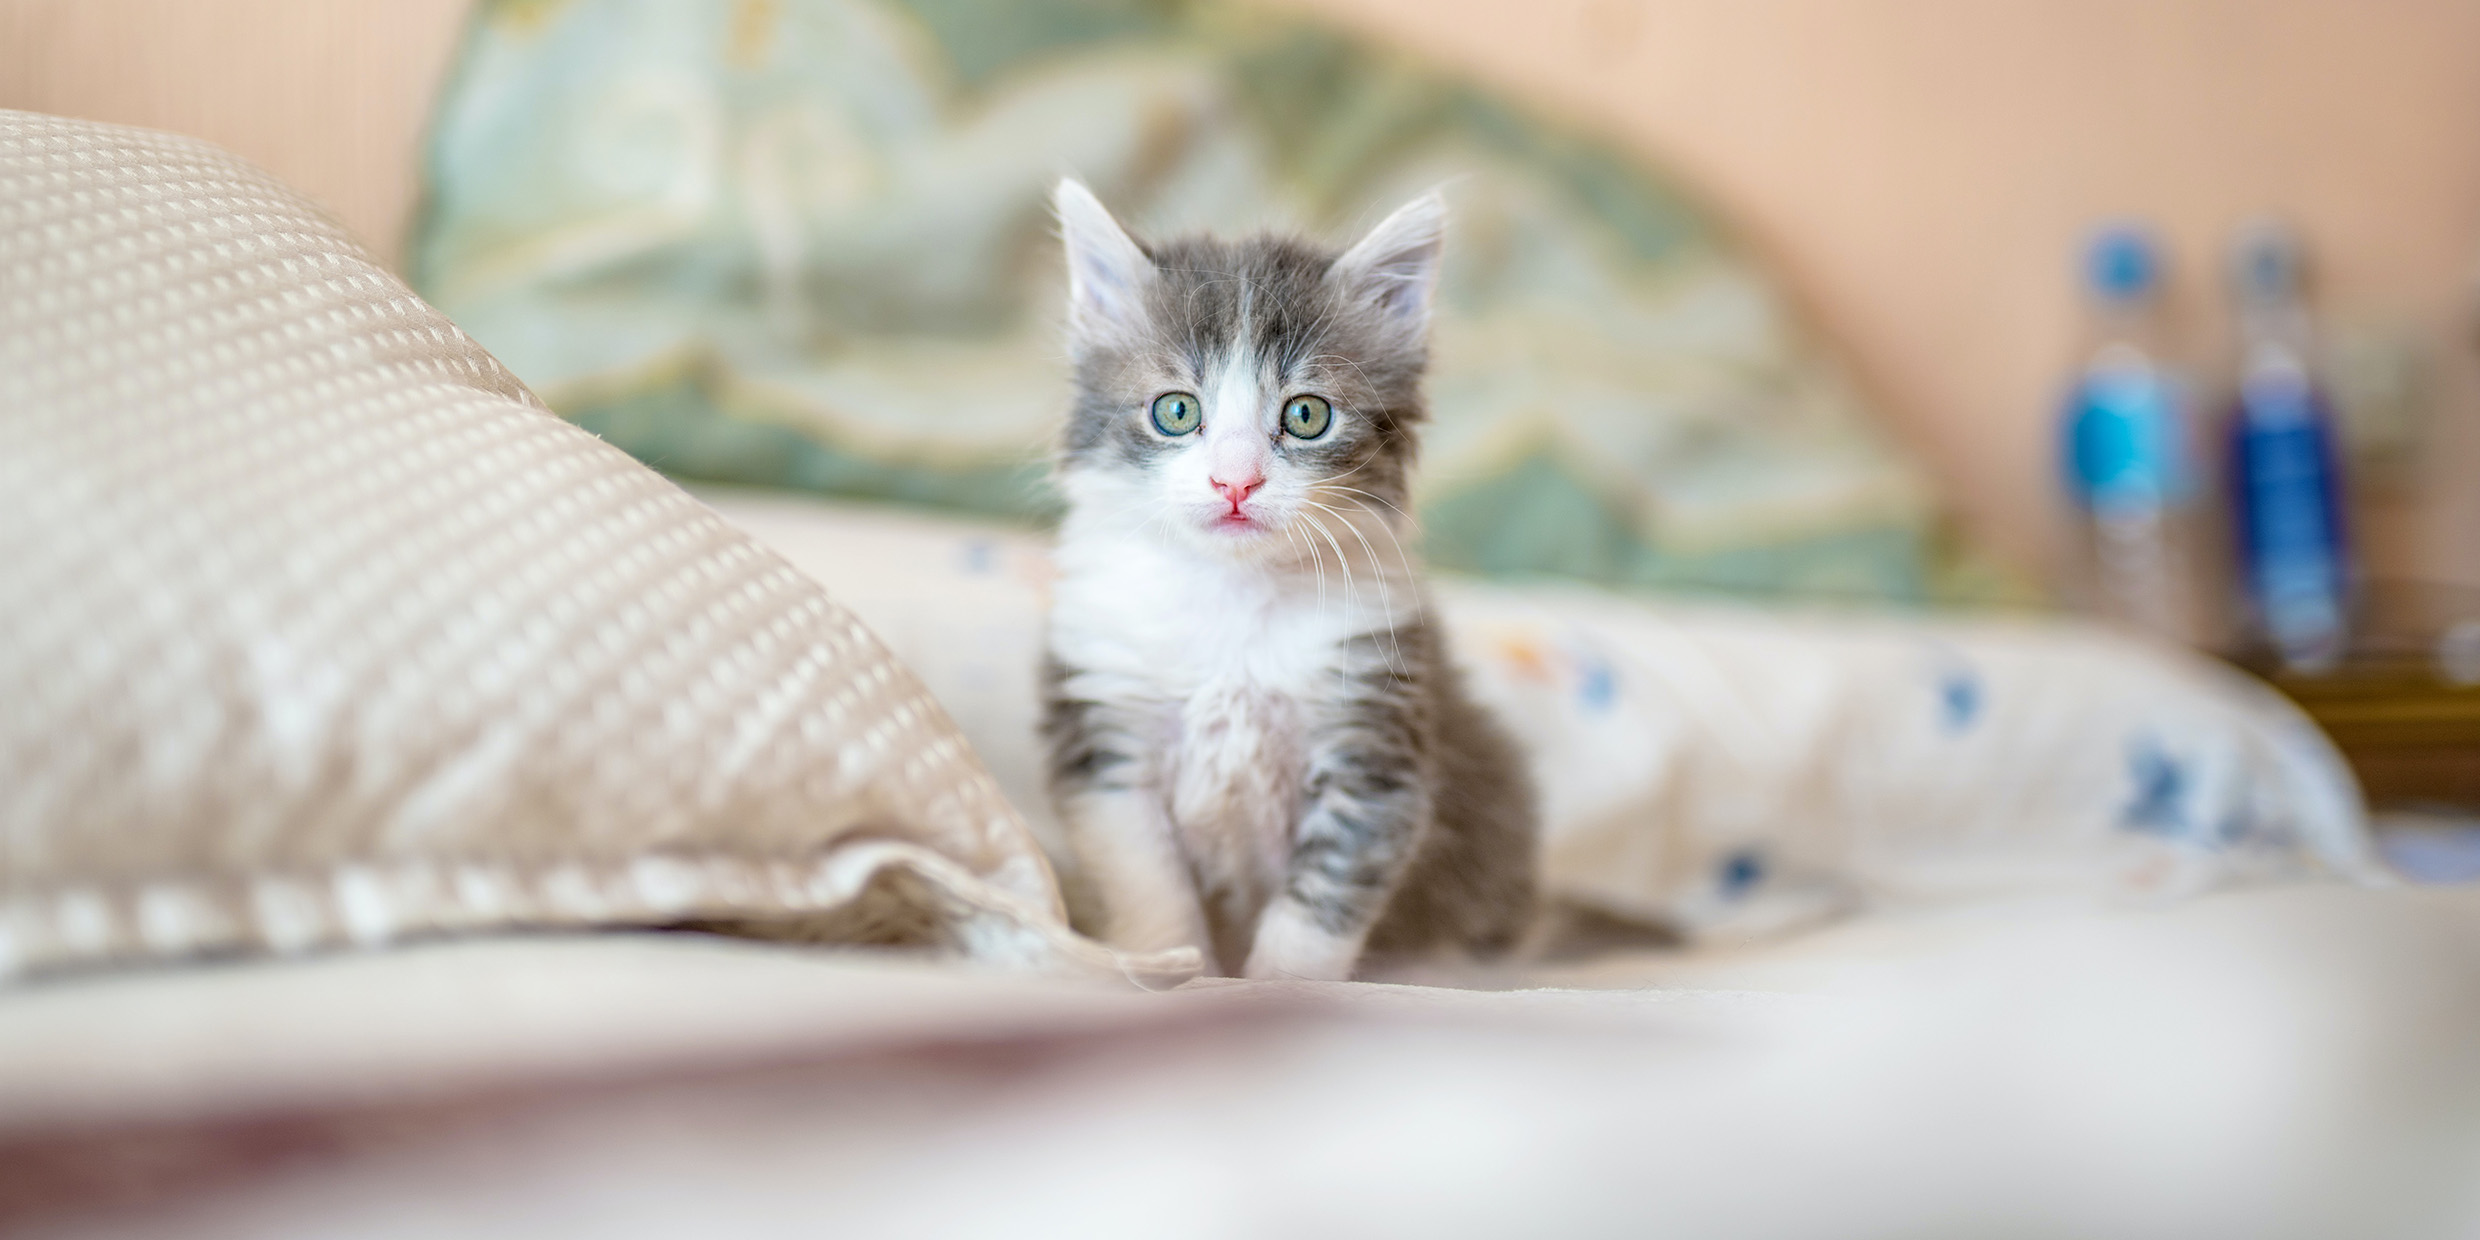 Image of fuzzy kitten